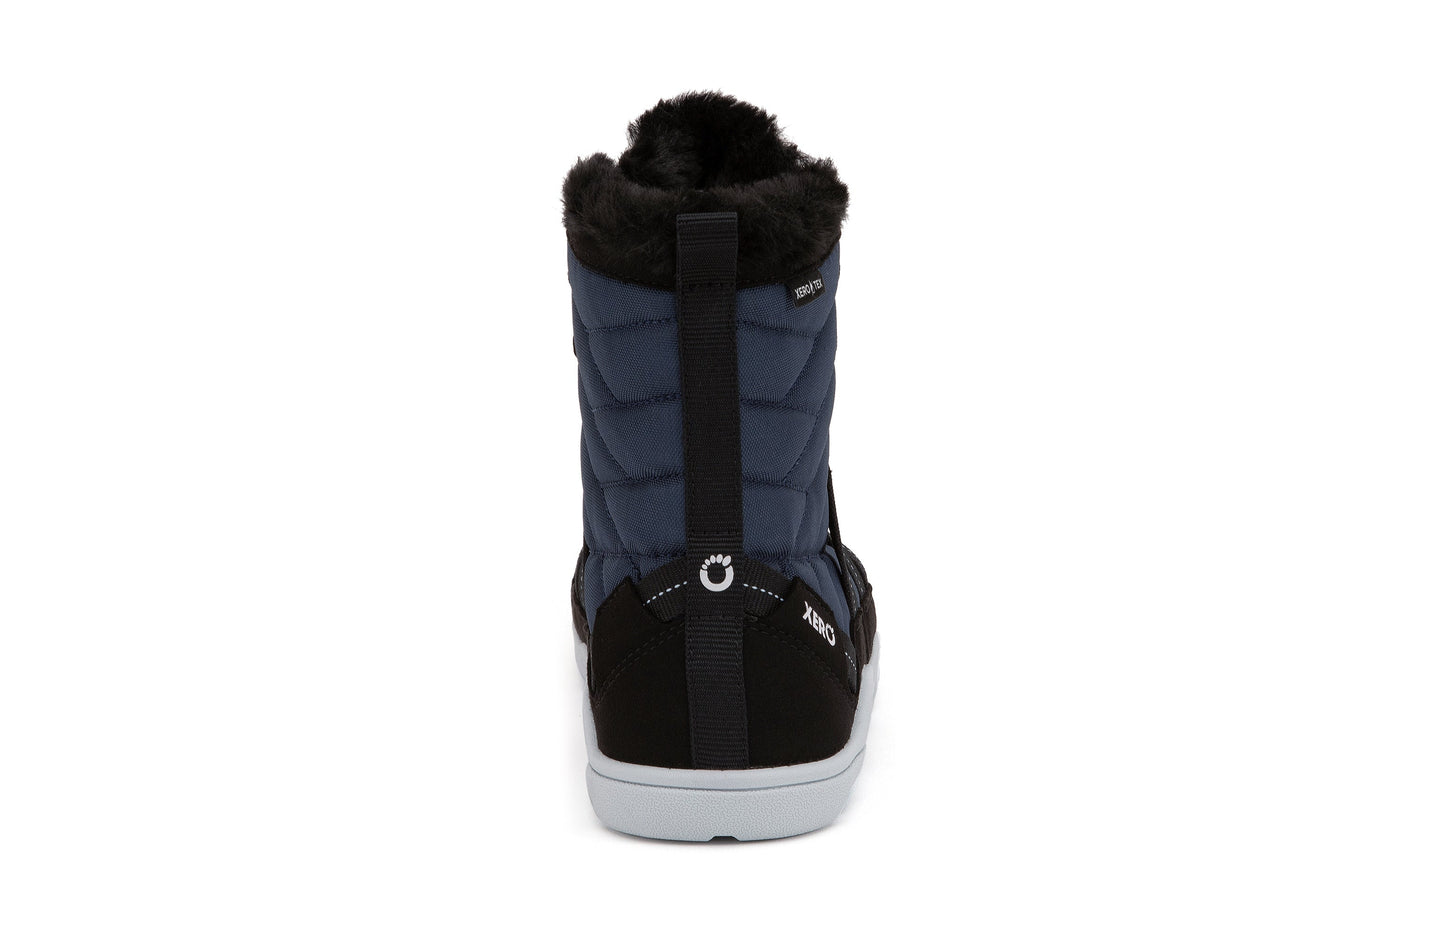 Xero Shoes Alpine Womens barfods vinterstøvler til kvinder i farven navy / black, bagfra